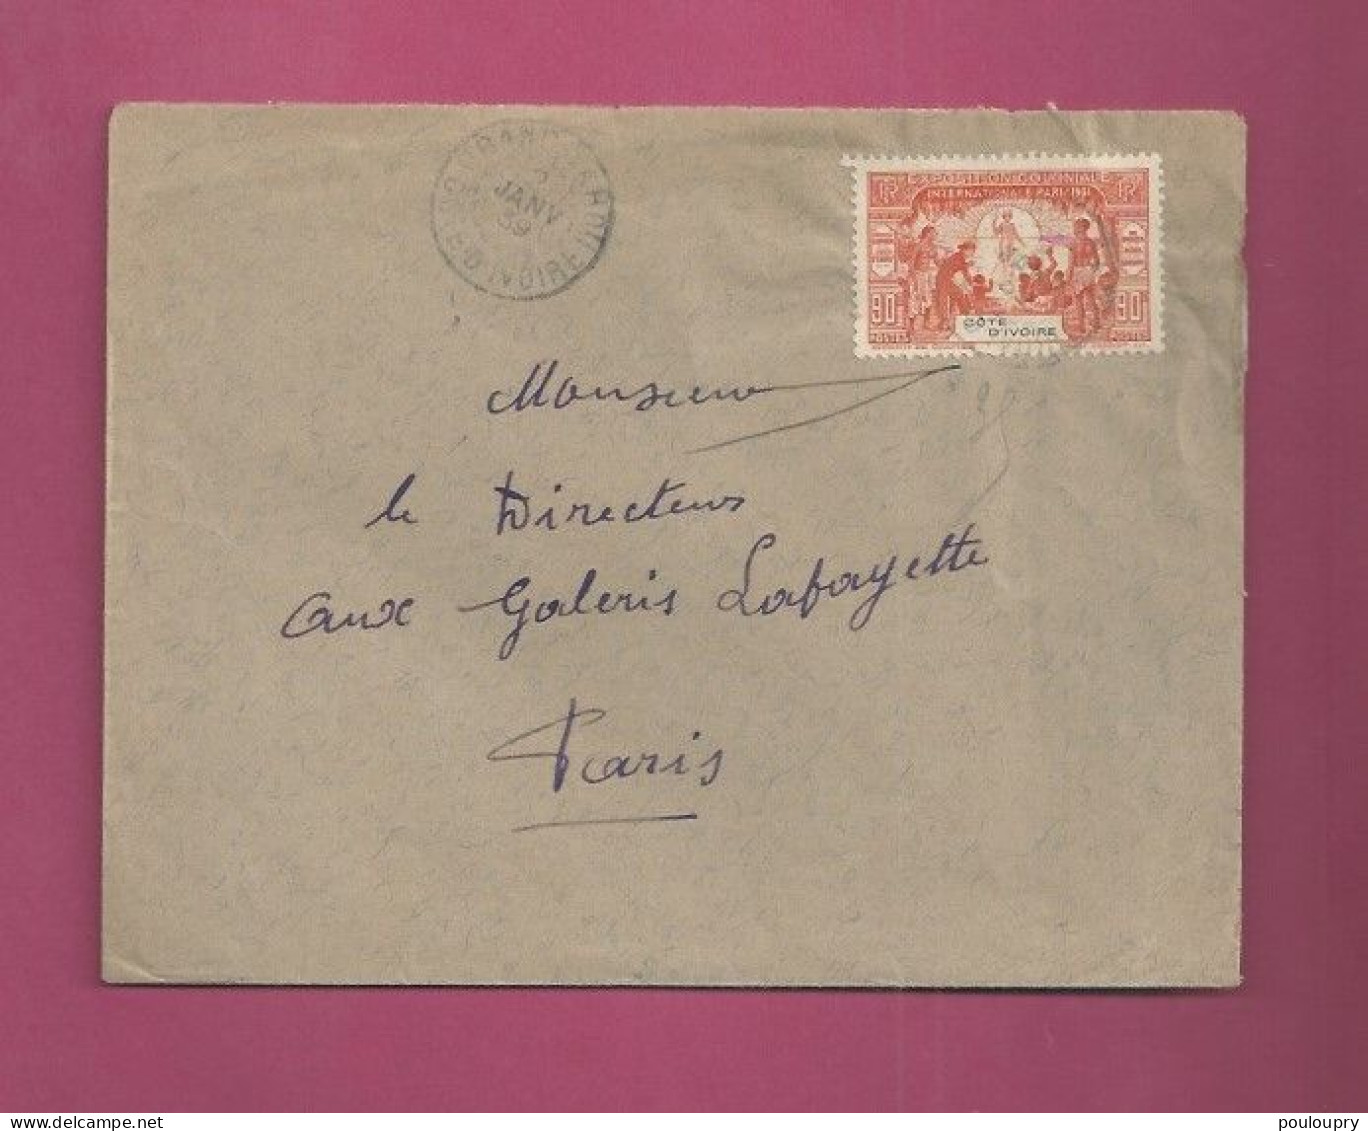 Lettre De 1939 Pour La France - YT N° 86 - Seul Sur Lettre - Exposition Coloniale De Paris - Storia Postale